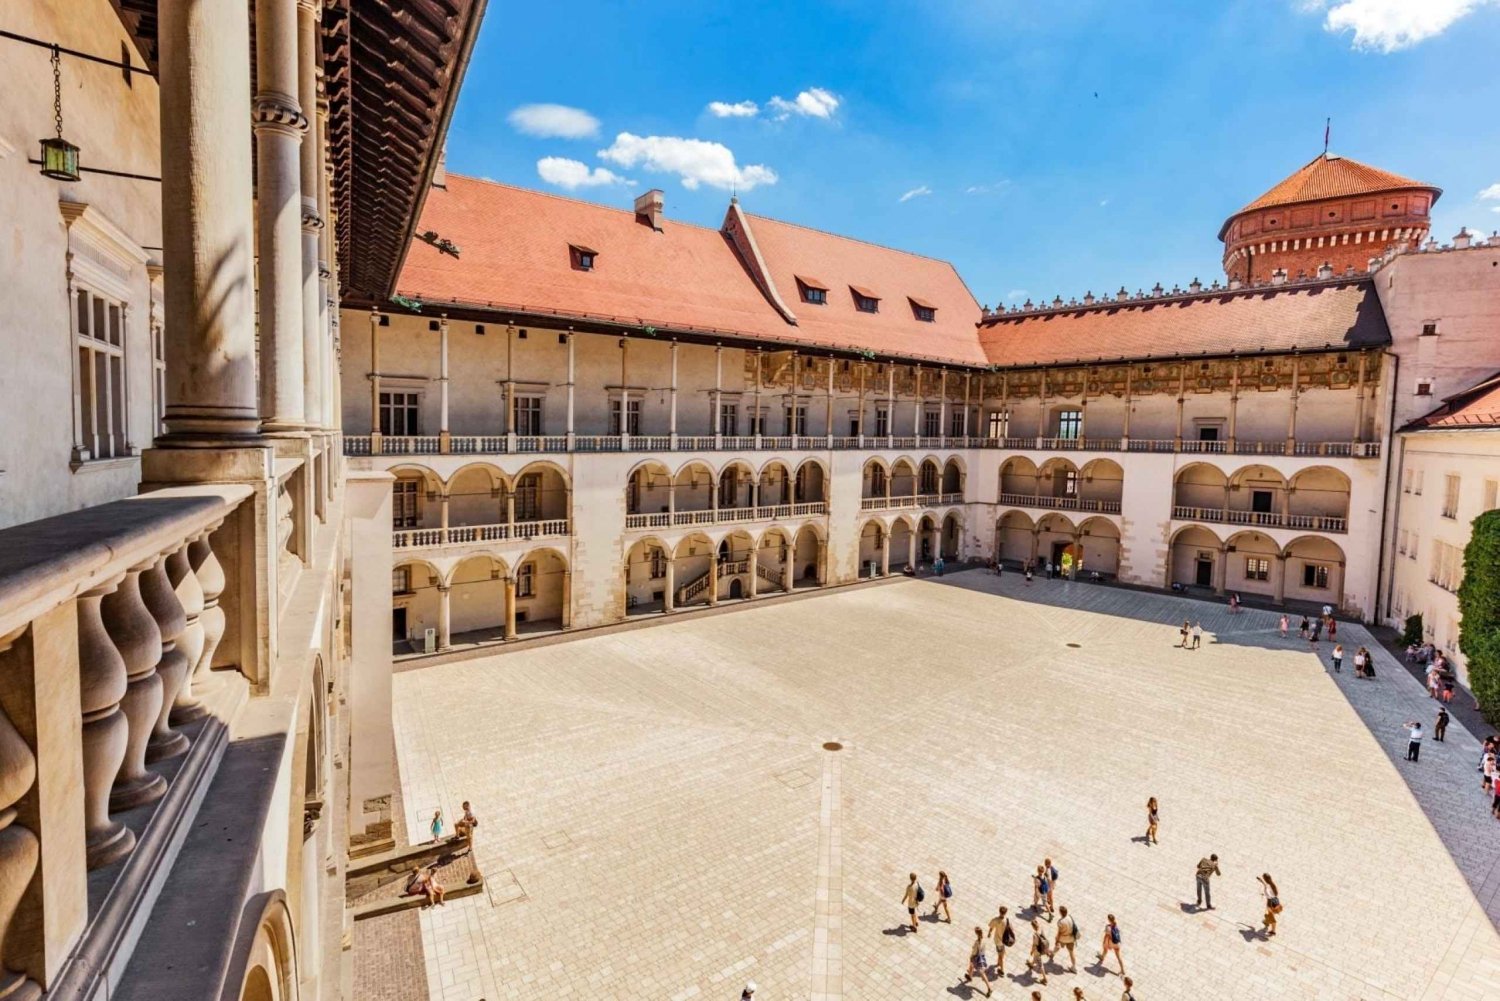 Cracovia: tour guidato del castello di Wawel e della collina con ingresso prioritario